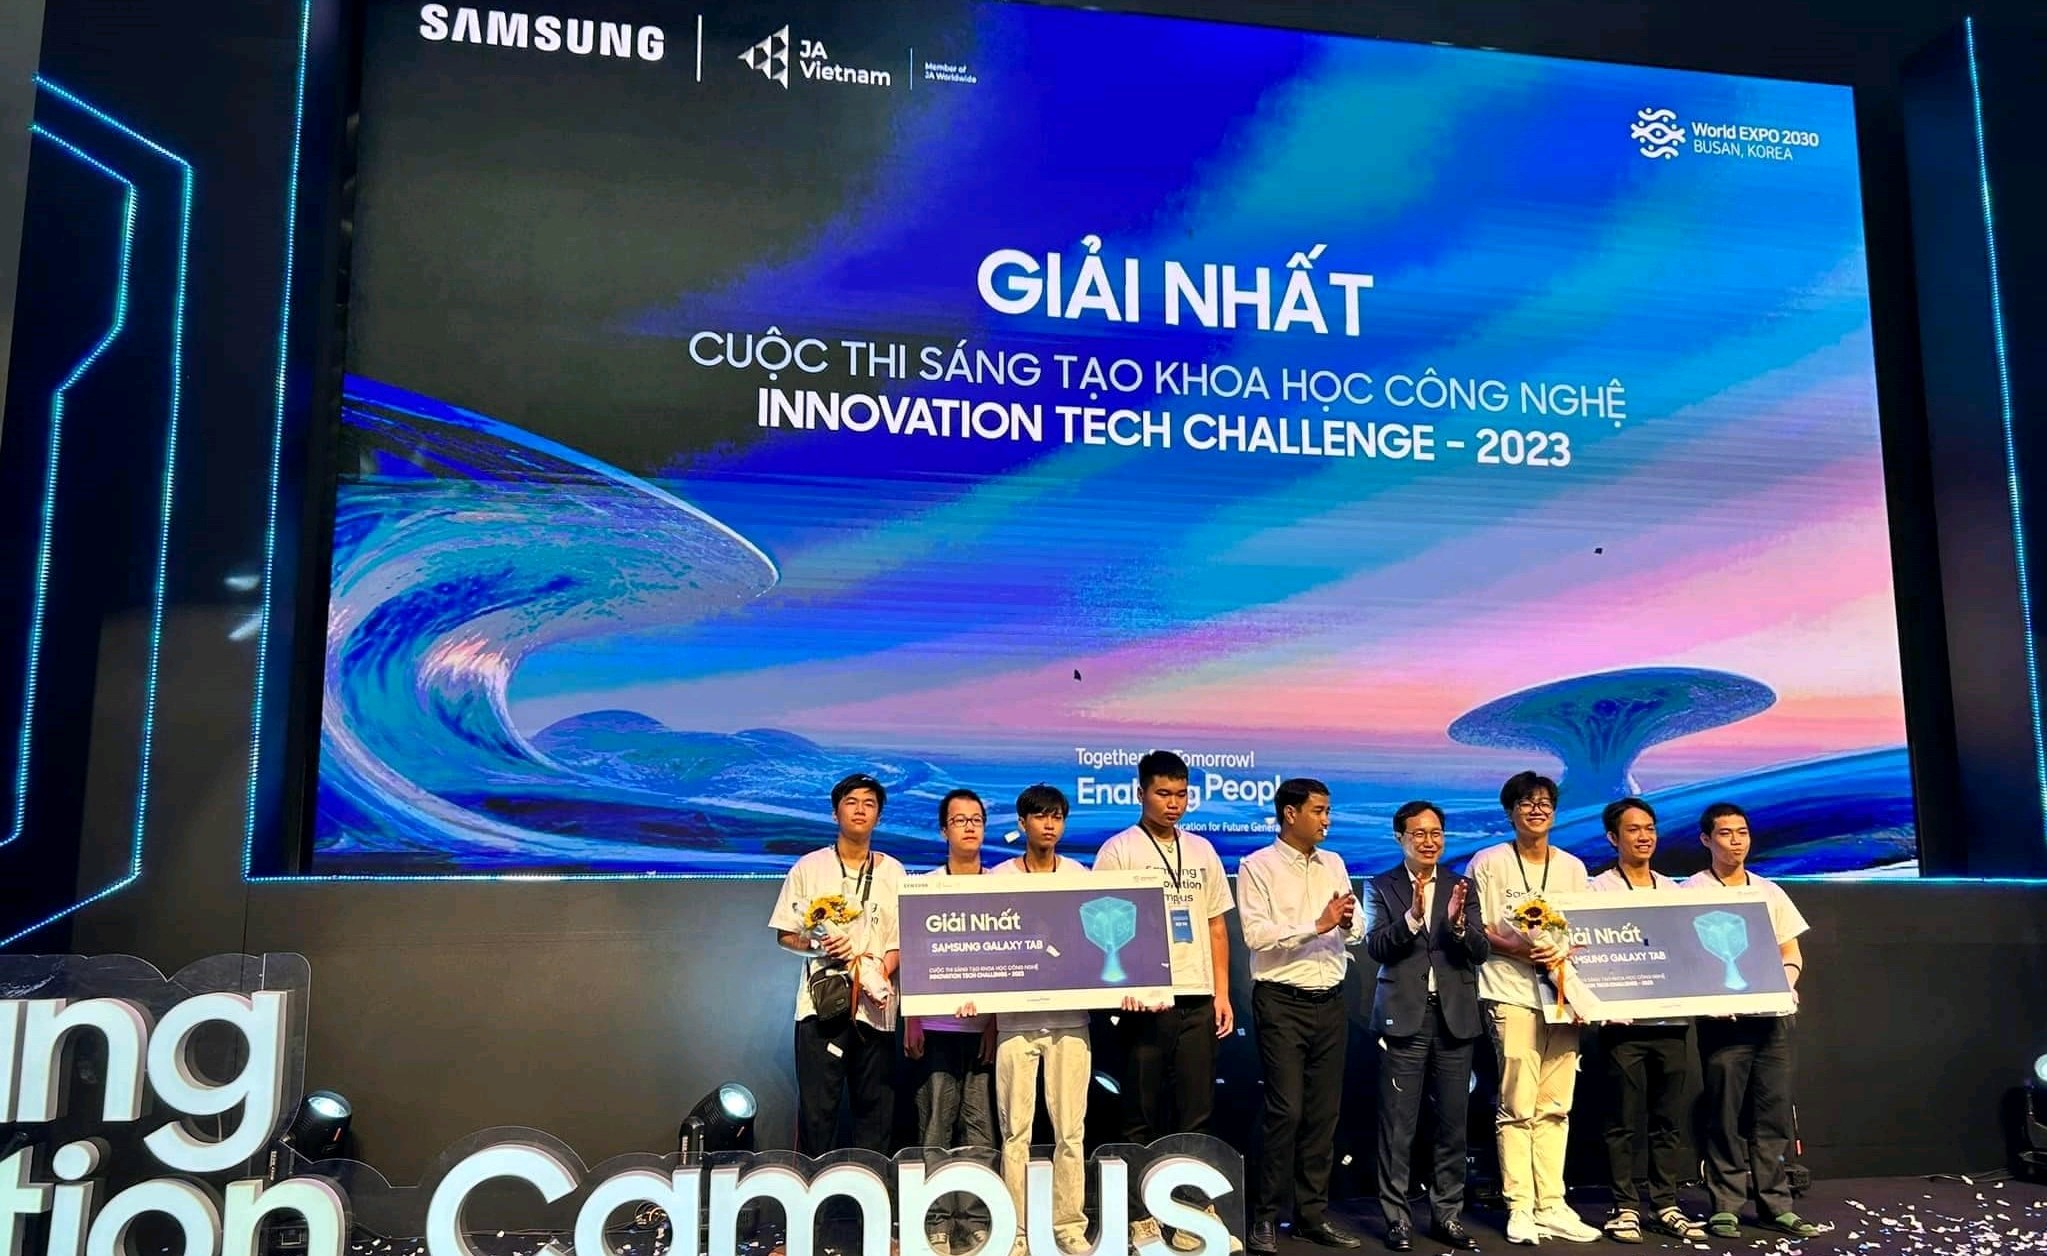 Sinh viên CNTT Trường Đại học Duy Tân dành giải Nhất cuộc thi Sáng tạo Khoa học Công nghệ - Innovation Tech Challenge 2023 do tập đoàn Samsung tổ chức.